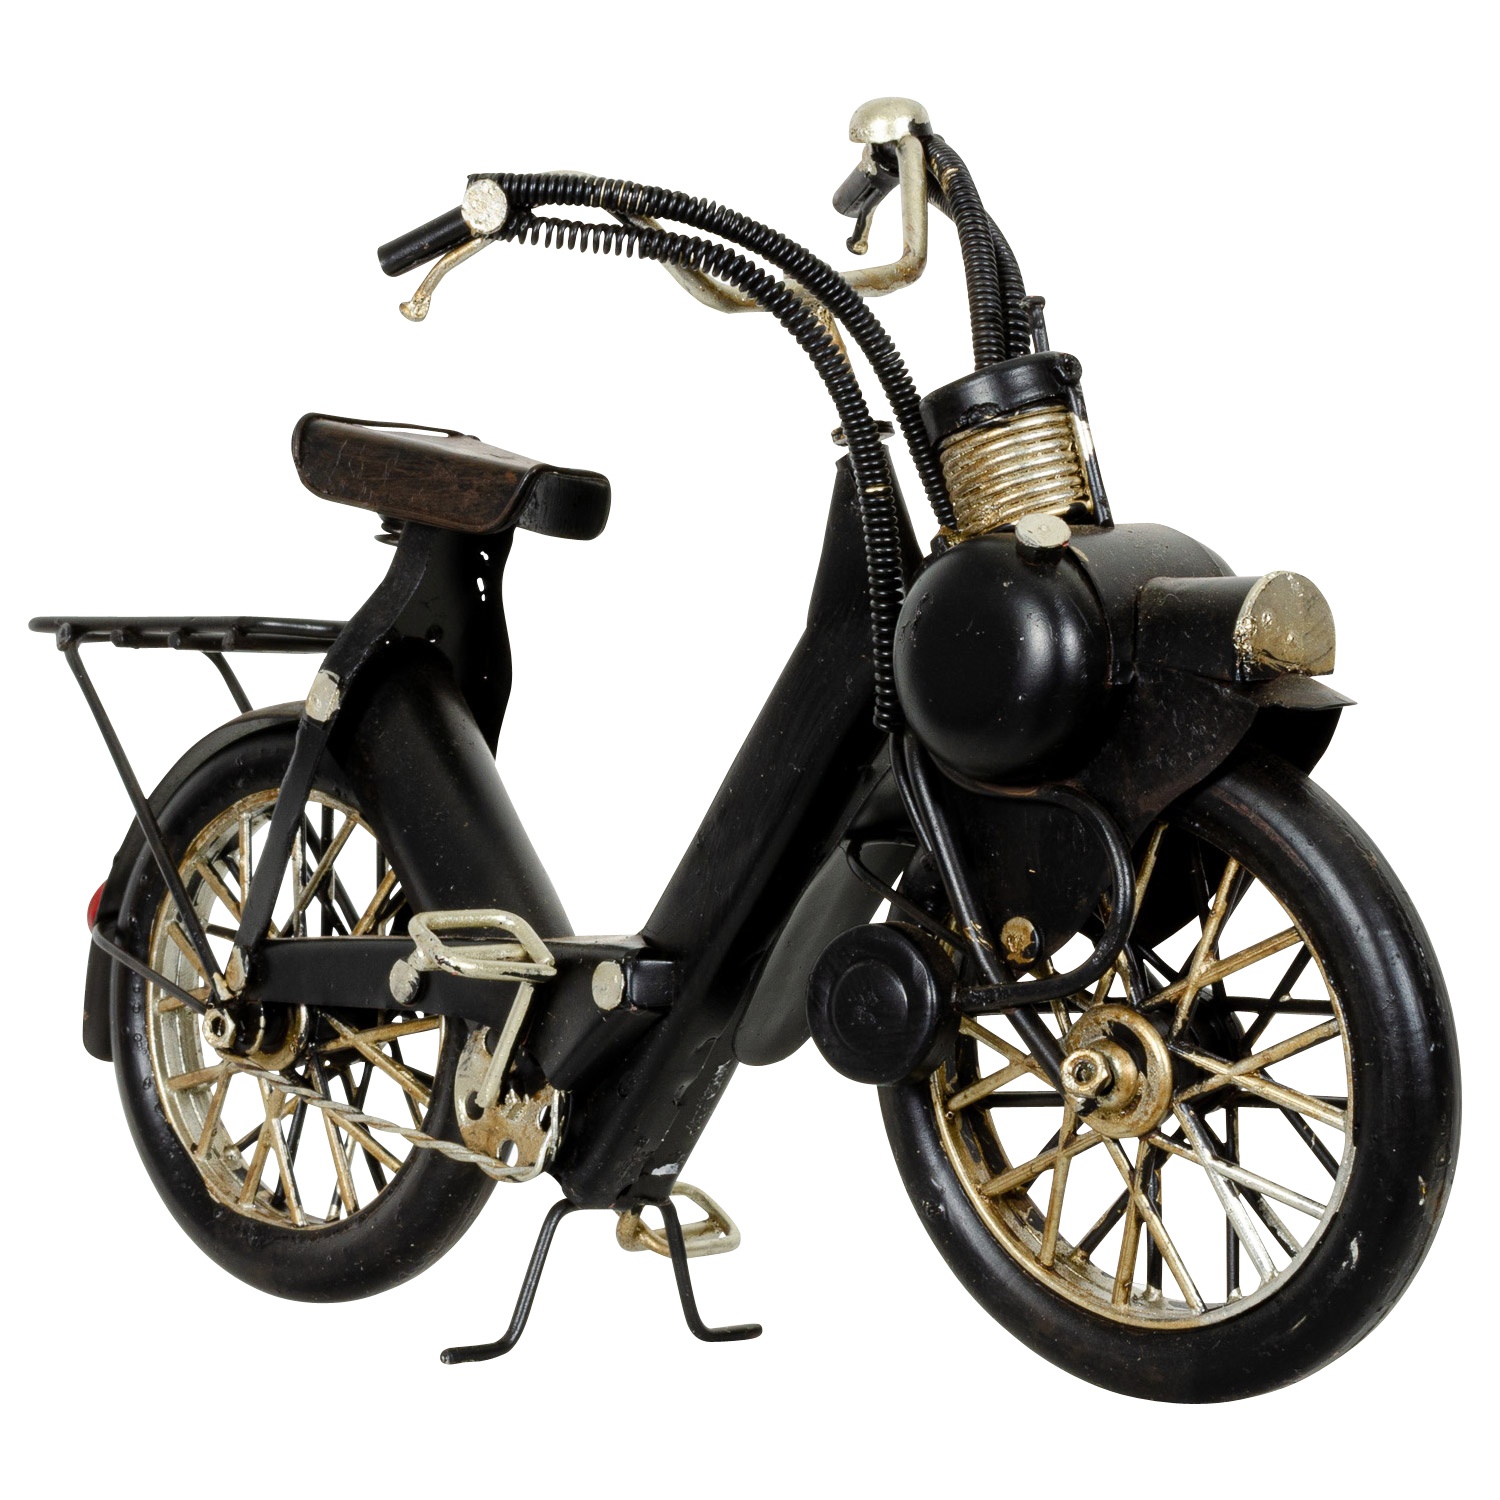 Modell Fahrrad Mofa Mofamodell Moped Nostalgie Blech Metall Antik-Stil ... - BL 243 4